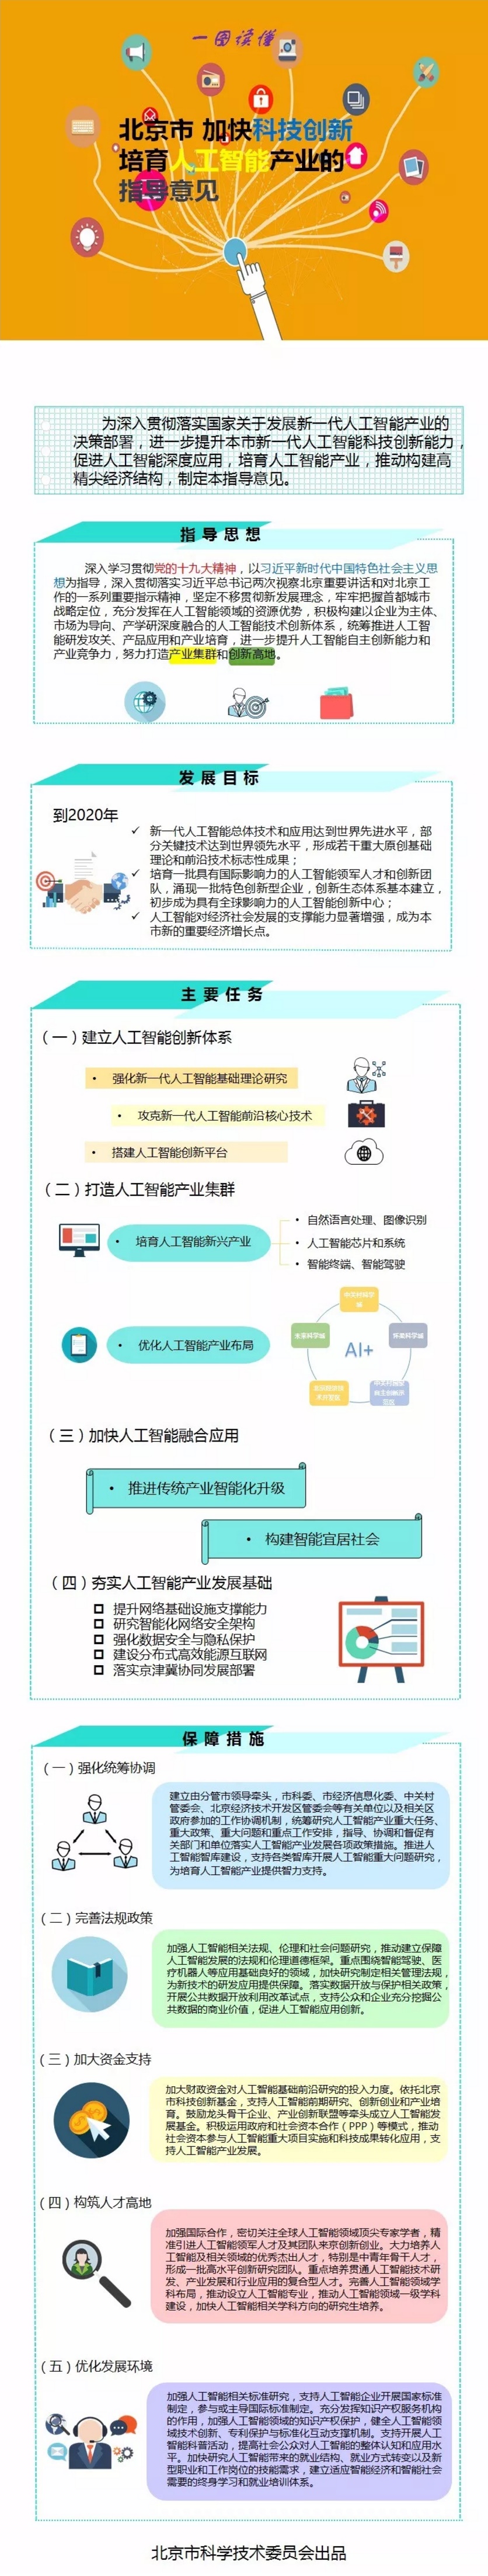 《北京市加快科技创新培育人工智能产业的指导意见》.jpg